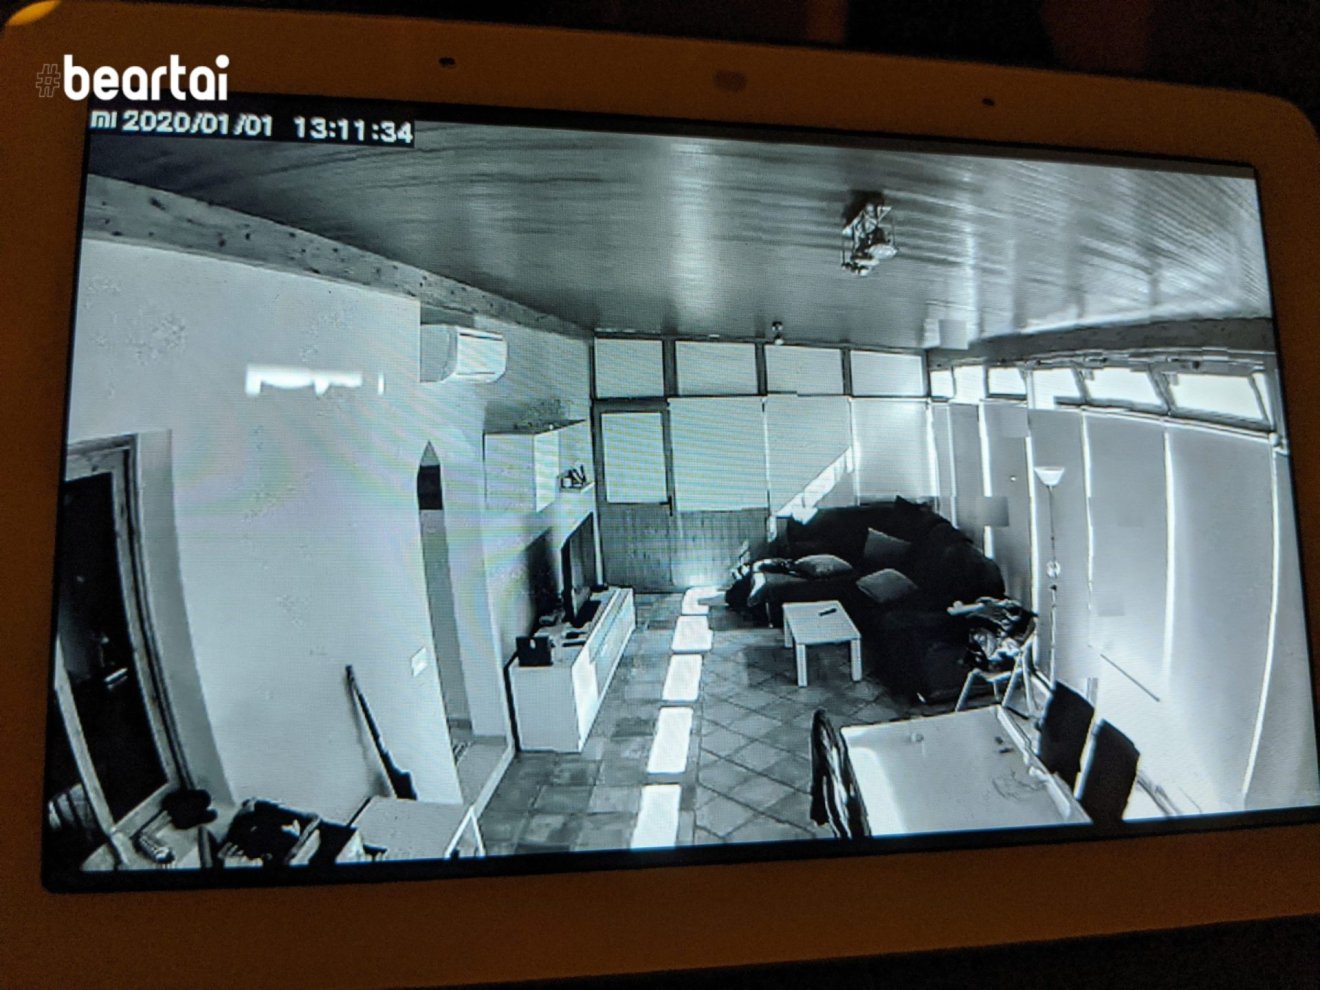 ภาพบน Google Nest Hub จากกล้อง Xiaomi แสดงห้องครัวในบ้านคนแปลกหน้า